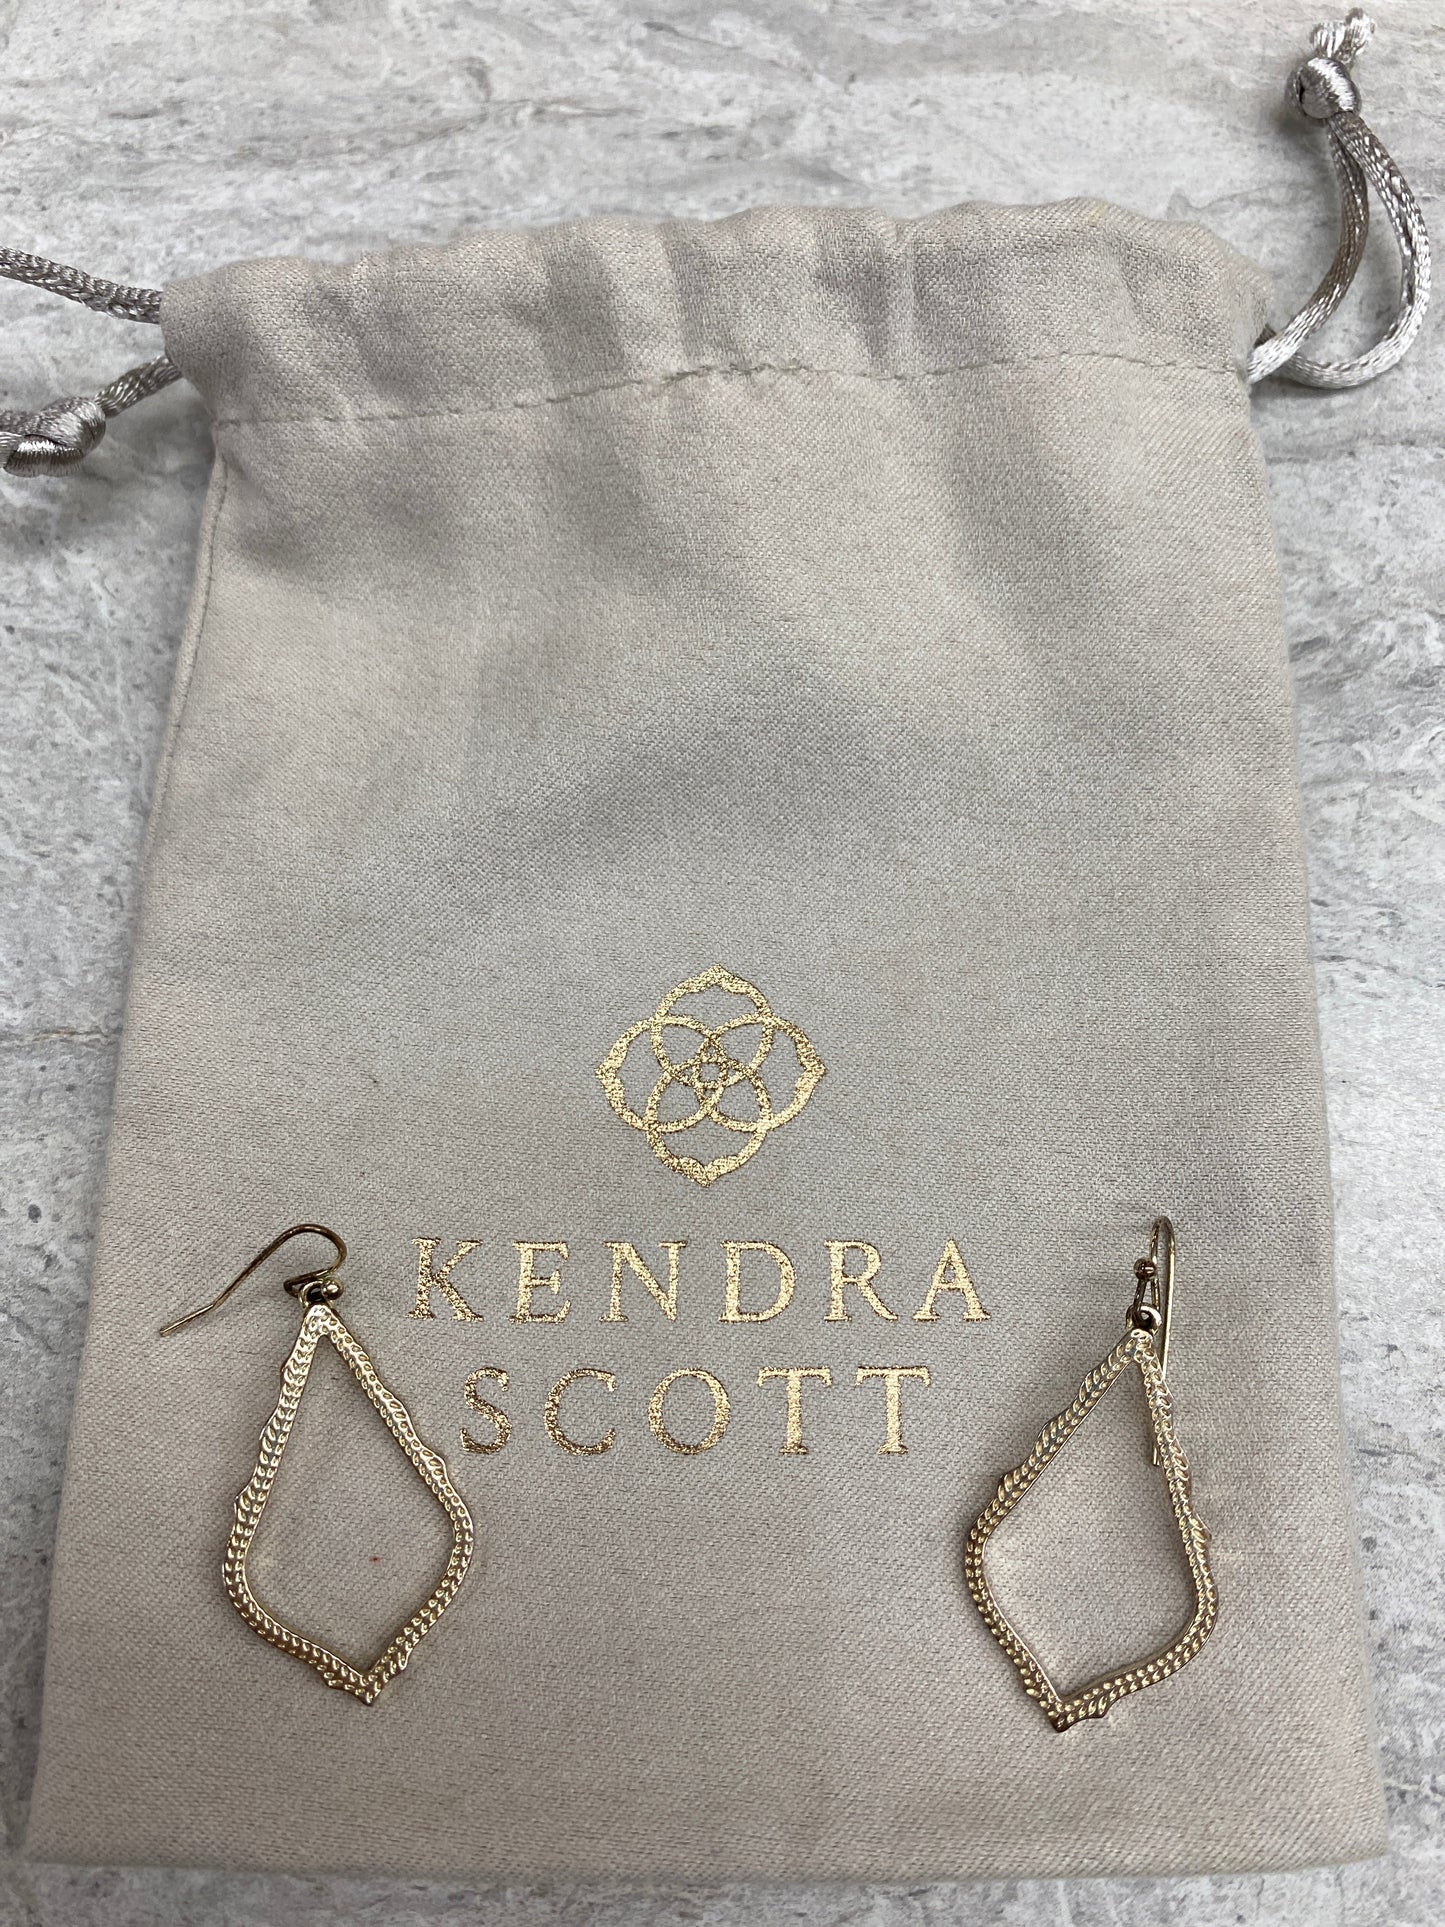 Earrings Dangle/drop Kendra Scott